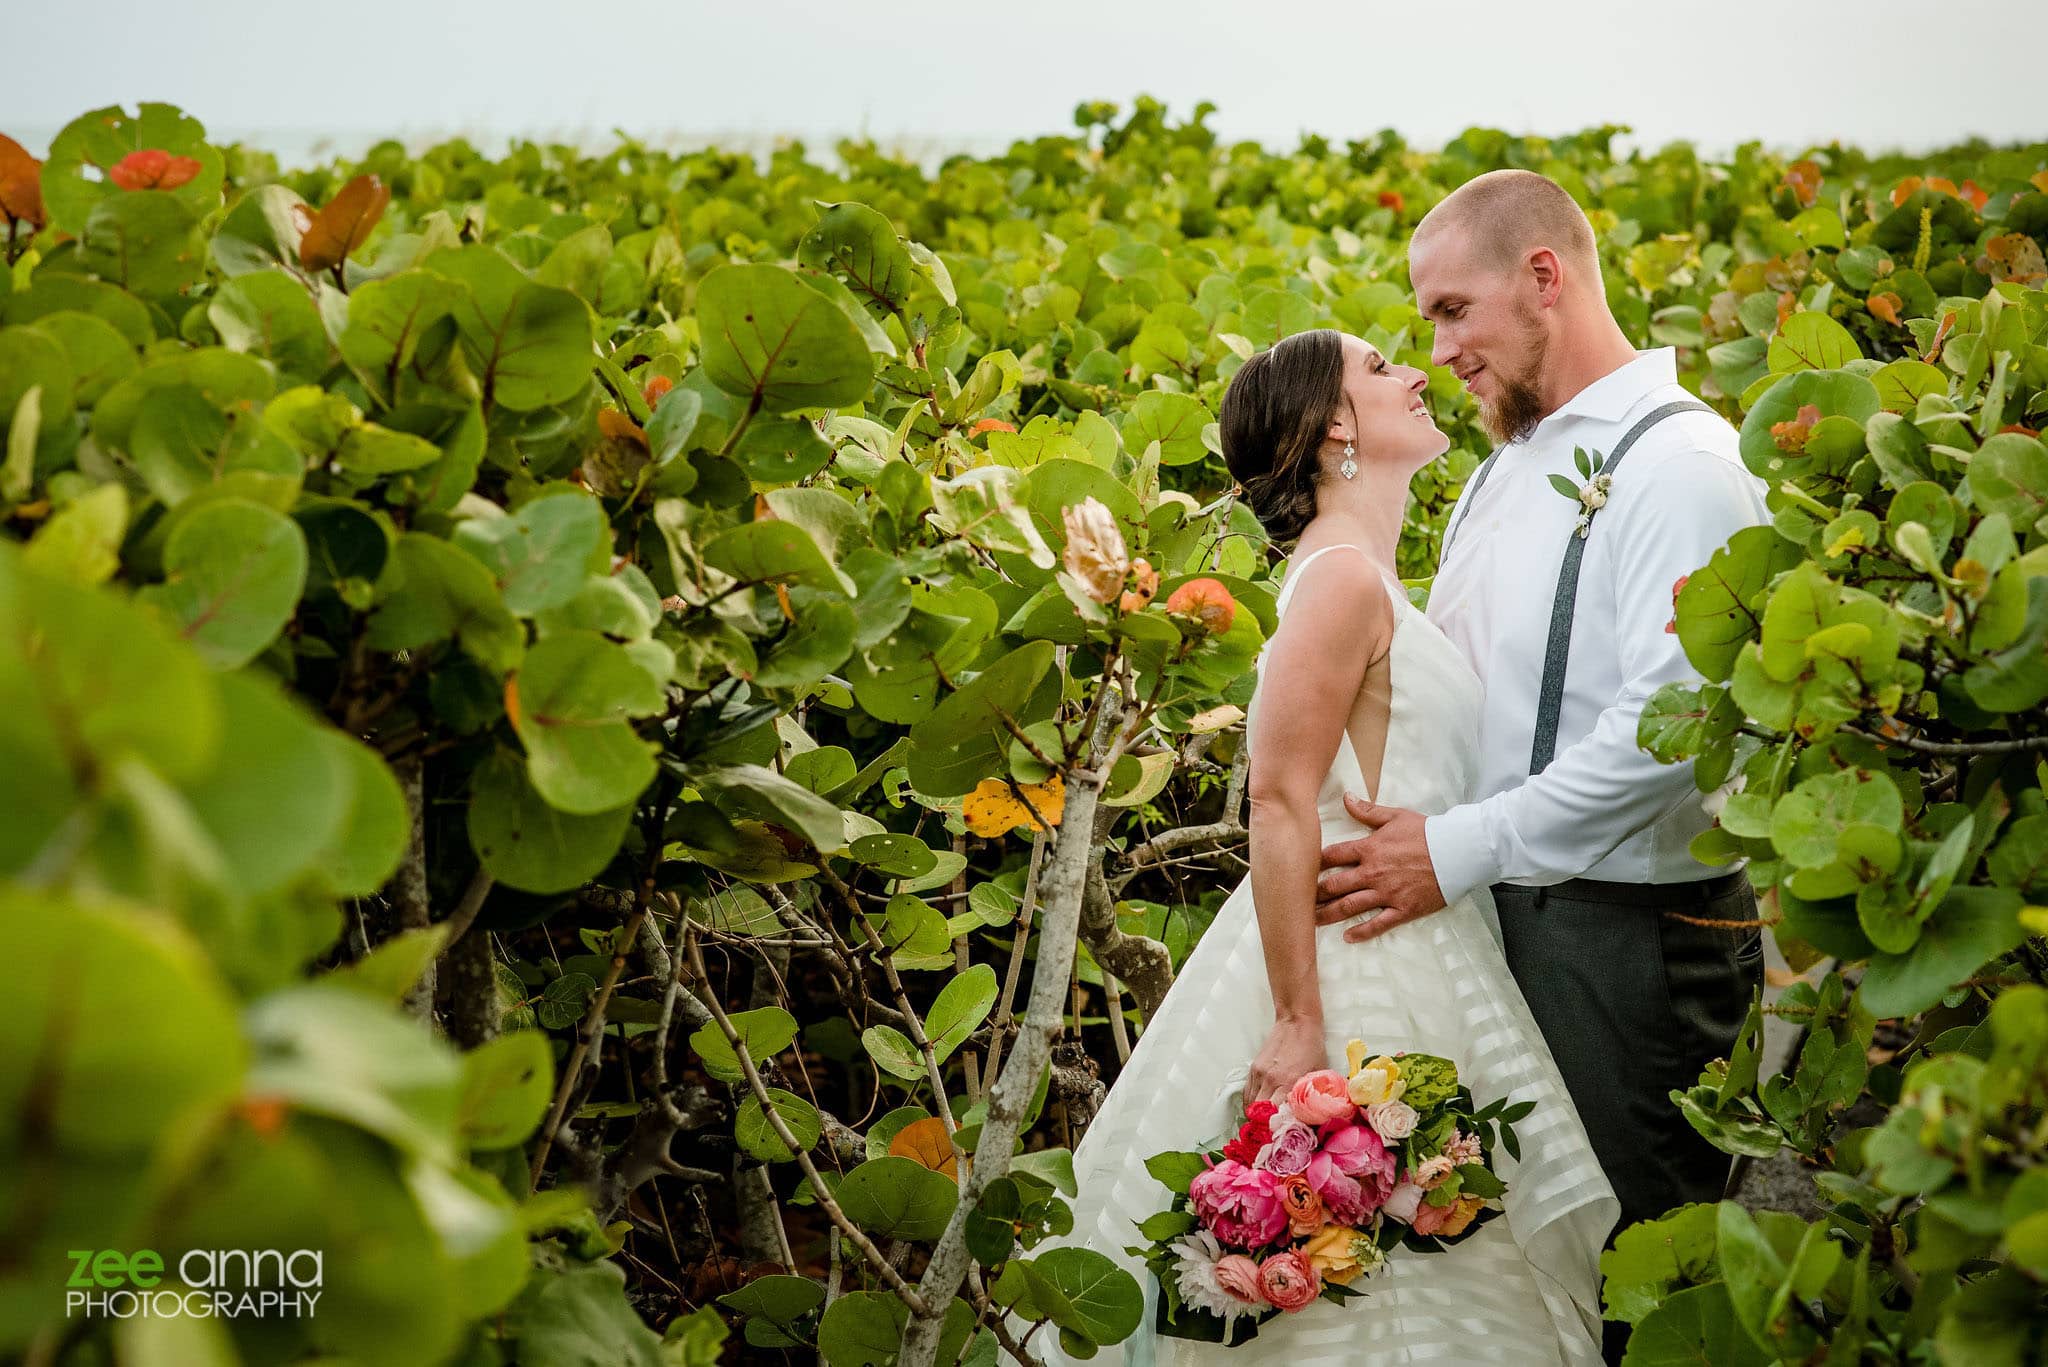 wedding couple photo greenery plants island